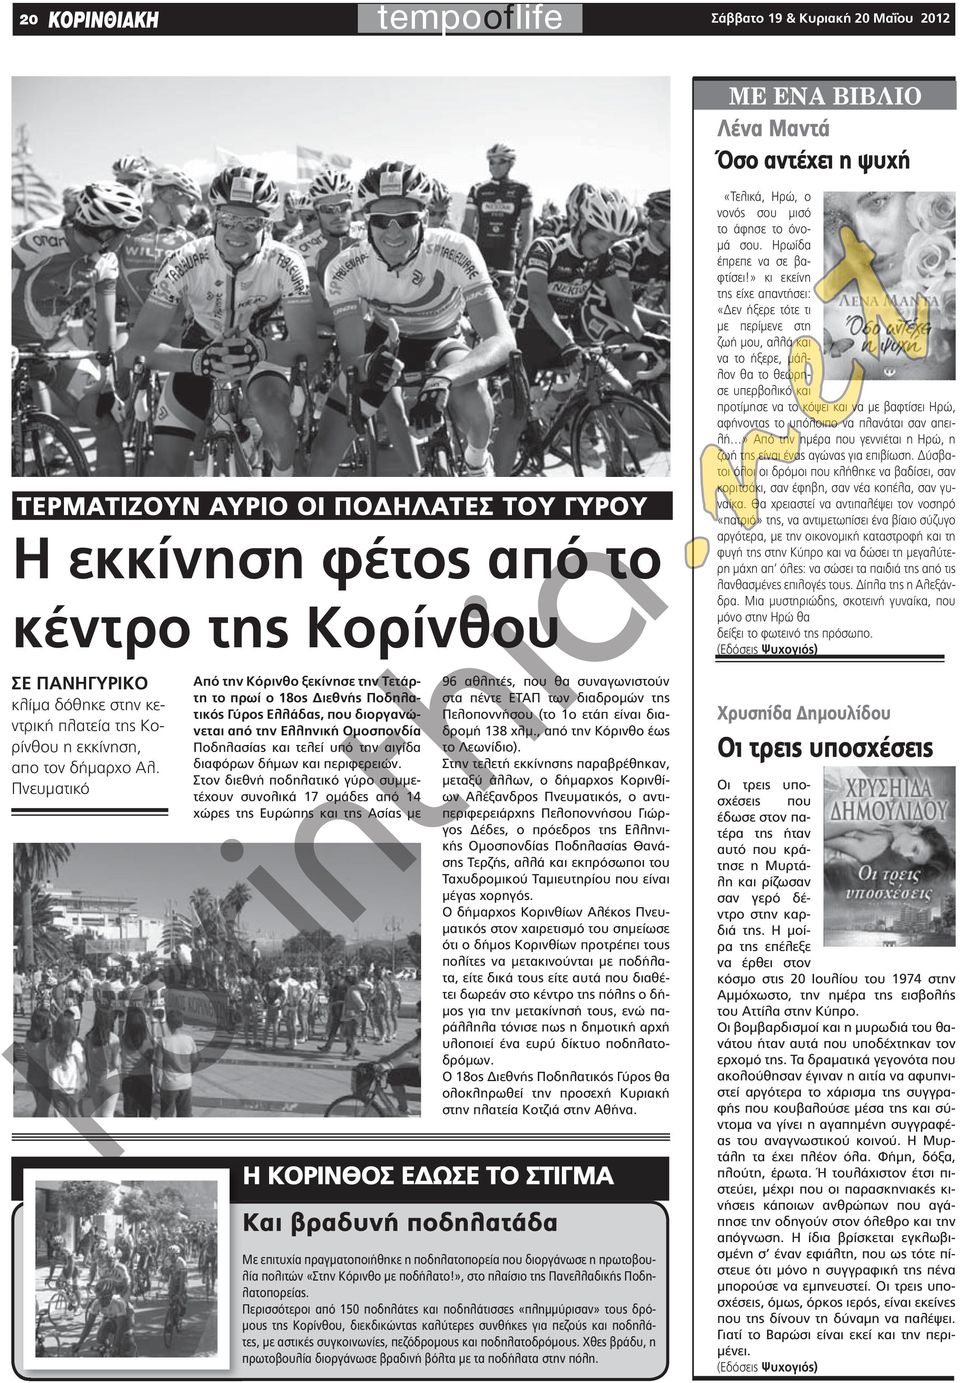 Πνευματικό από την κόρινθο ξεκίνησε την τετάρτη το πρωί ο 18ος Διεθνής ποδηλατικός Γύρος ελλάδας, που διοργανώνεται από την ελληνική ομοσπονδία Ποδηλασίας και τελεί υπό την αιγίδα διαφόρων δήμων και